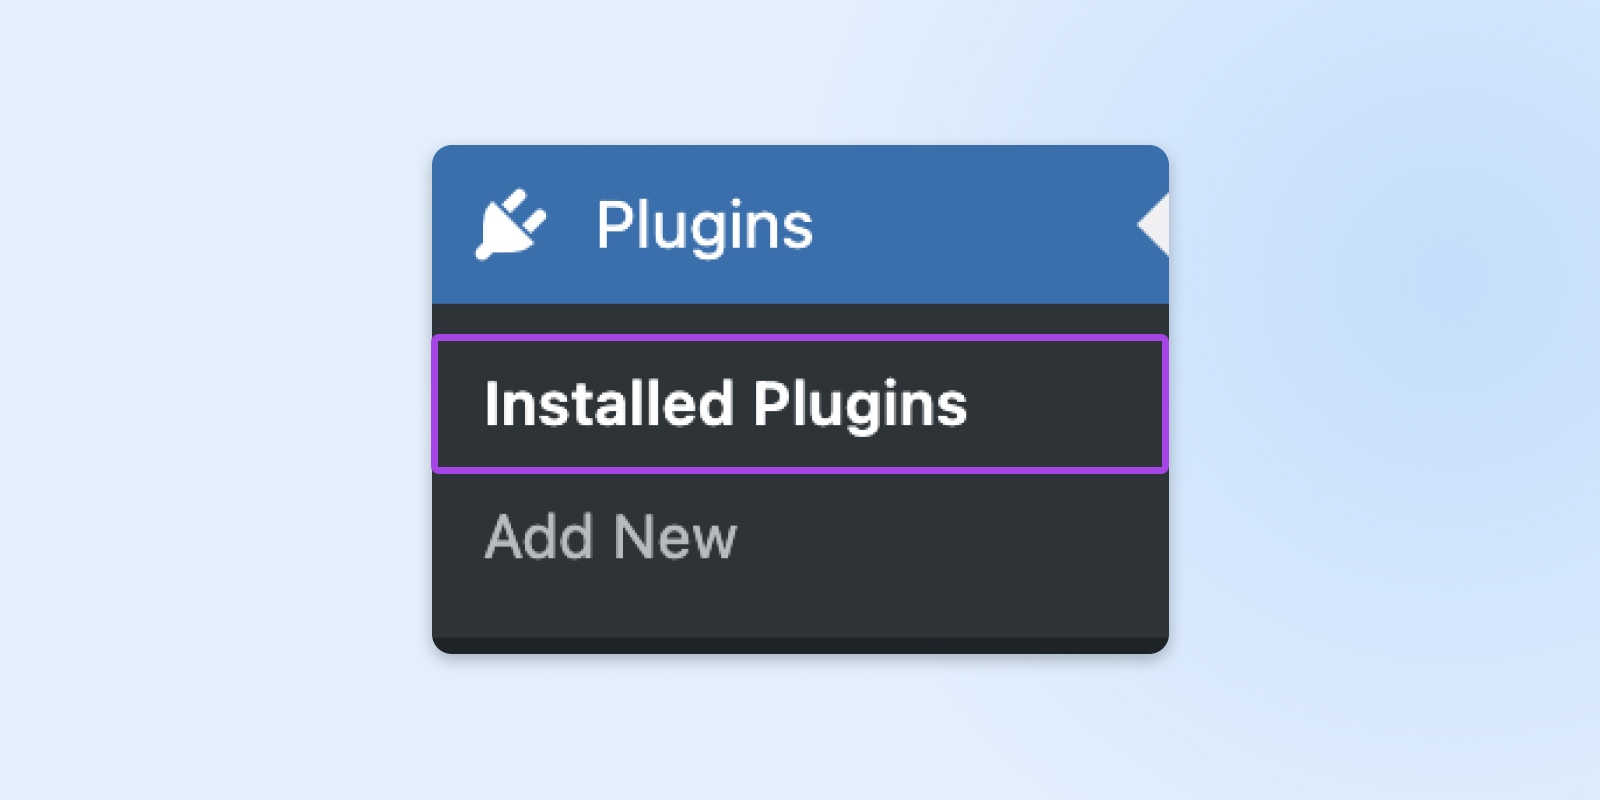 Installed Plugins